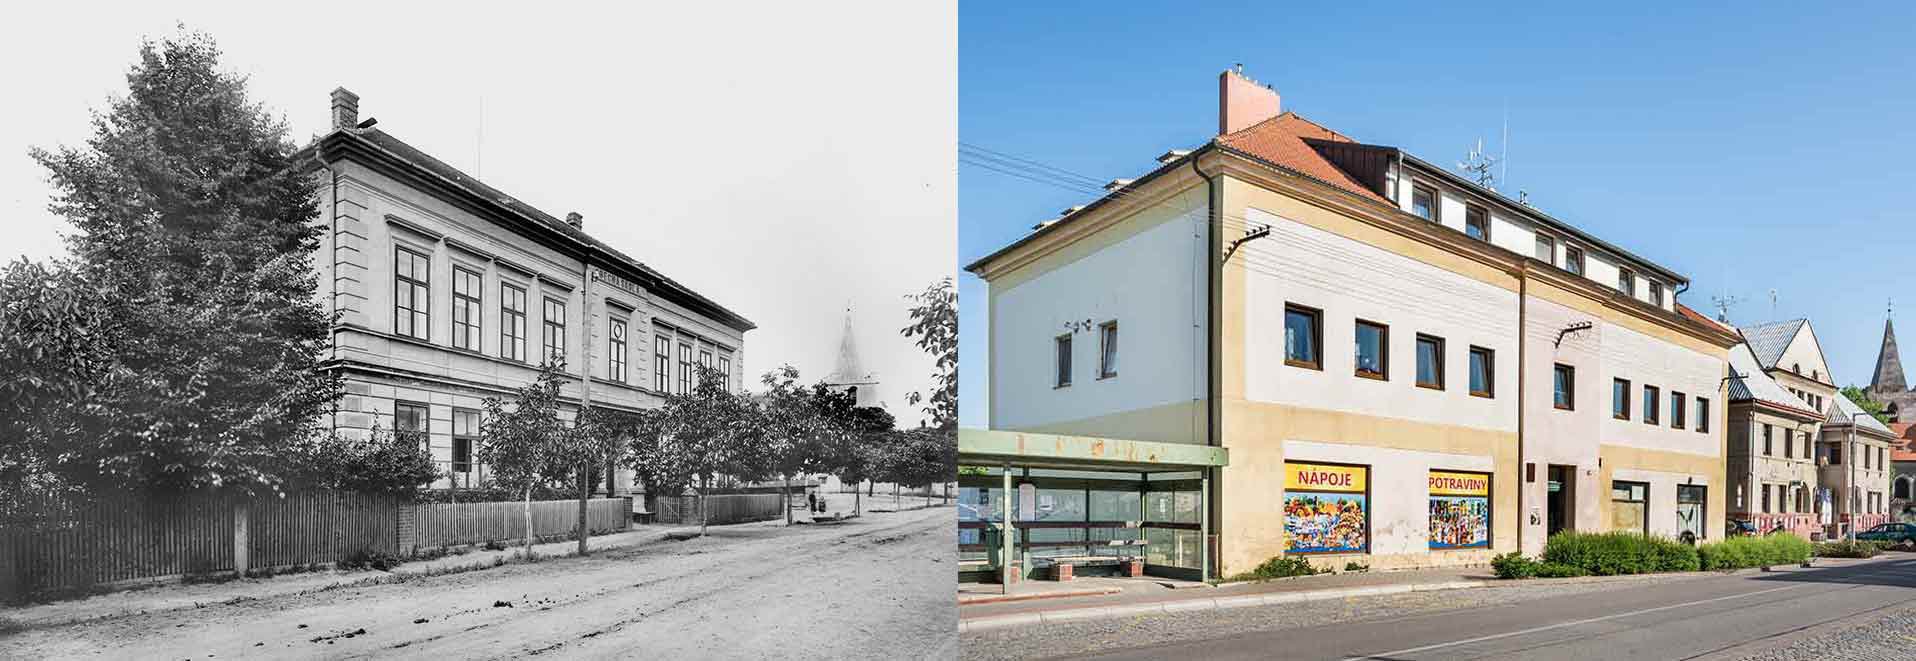 Opatovice, obecná škola, postavena 1888 a dnešní podoba